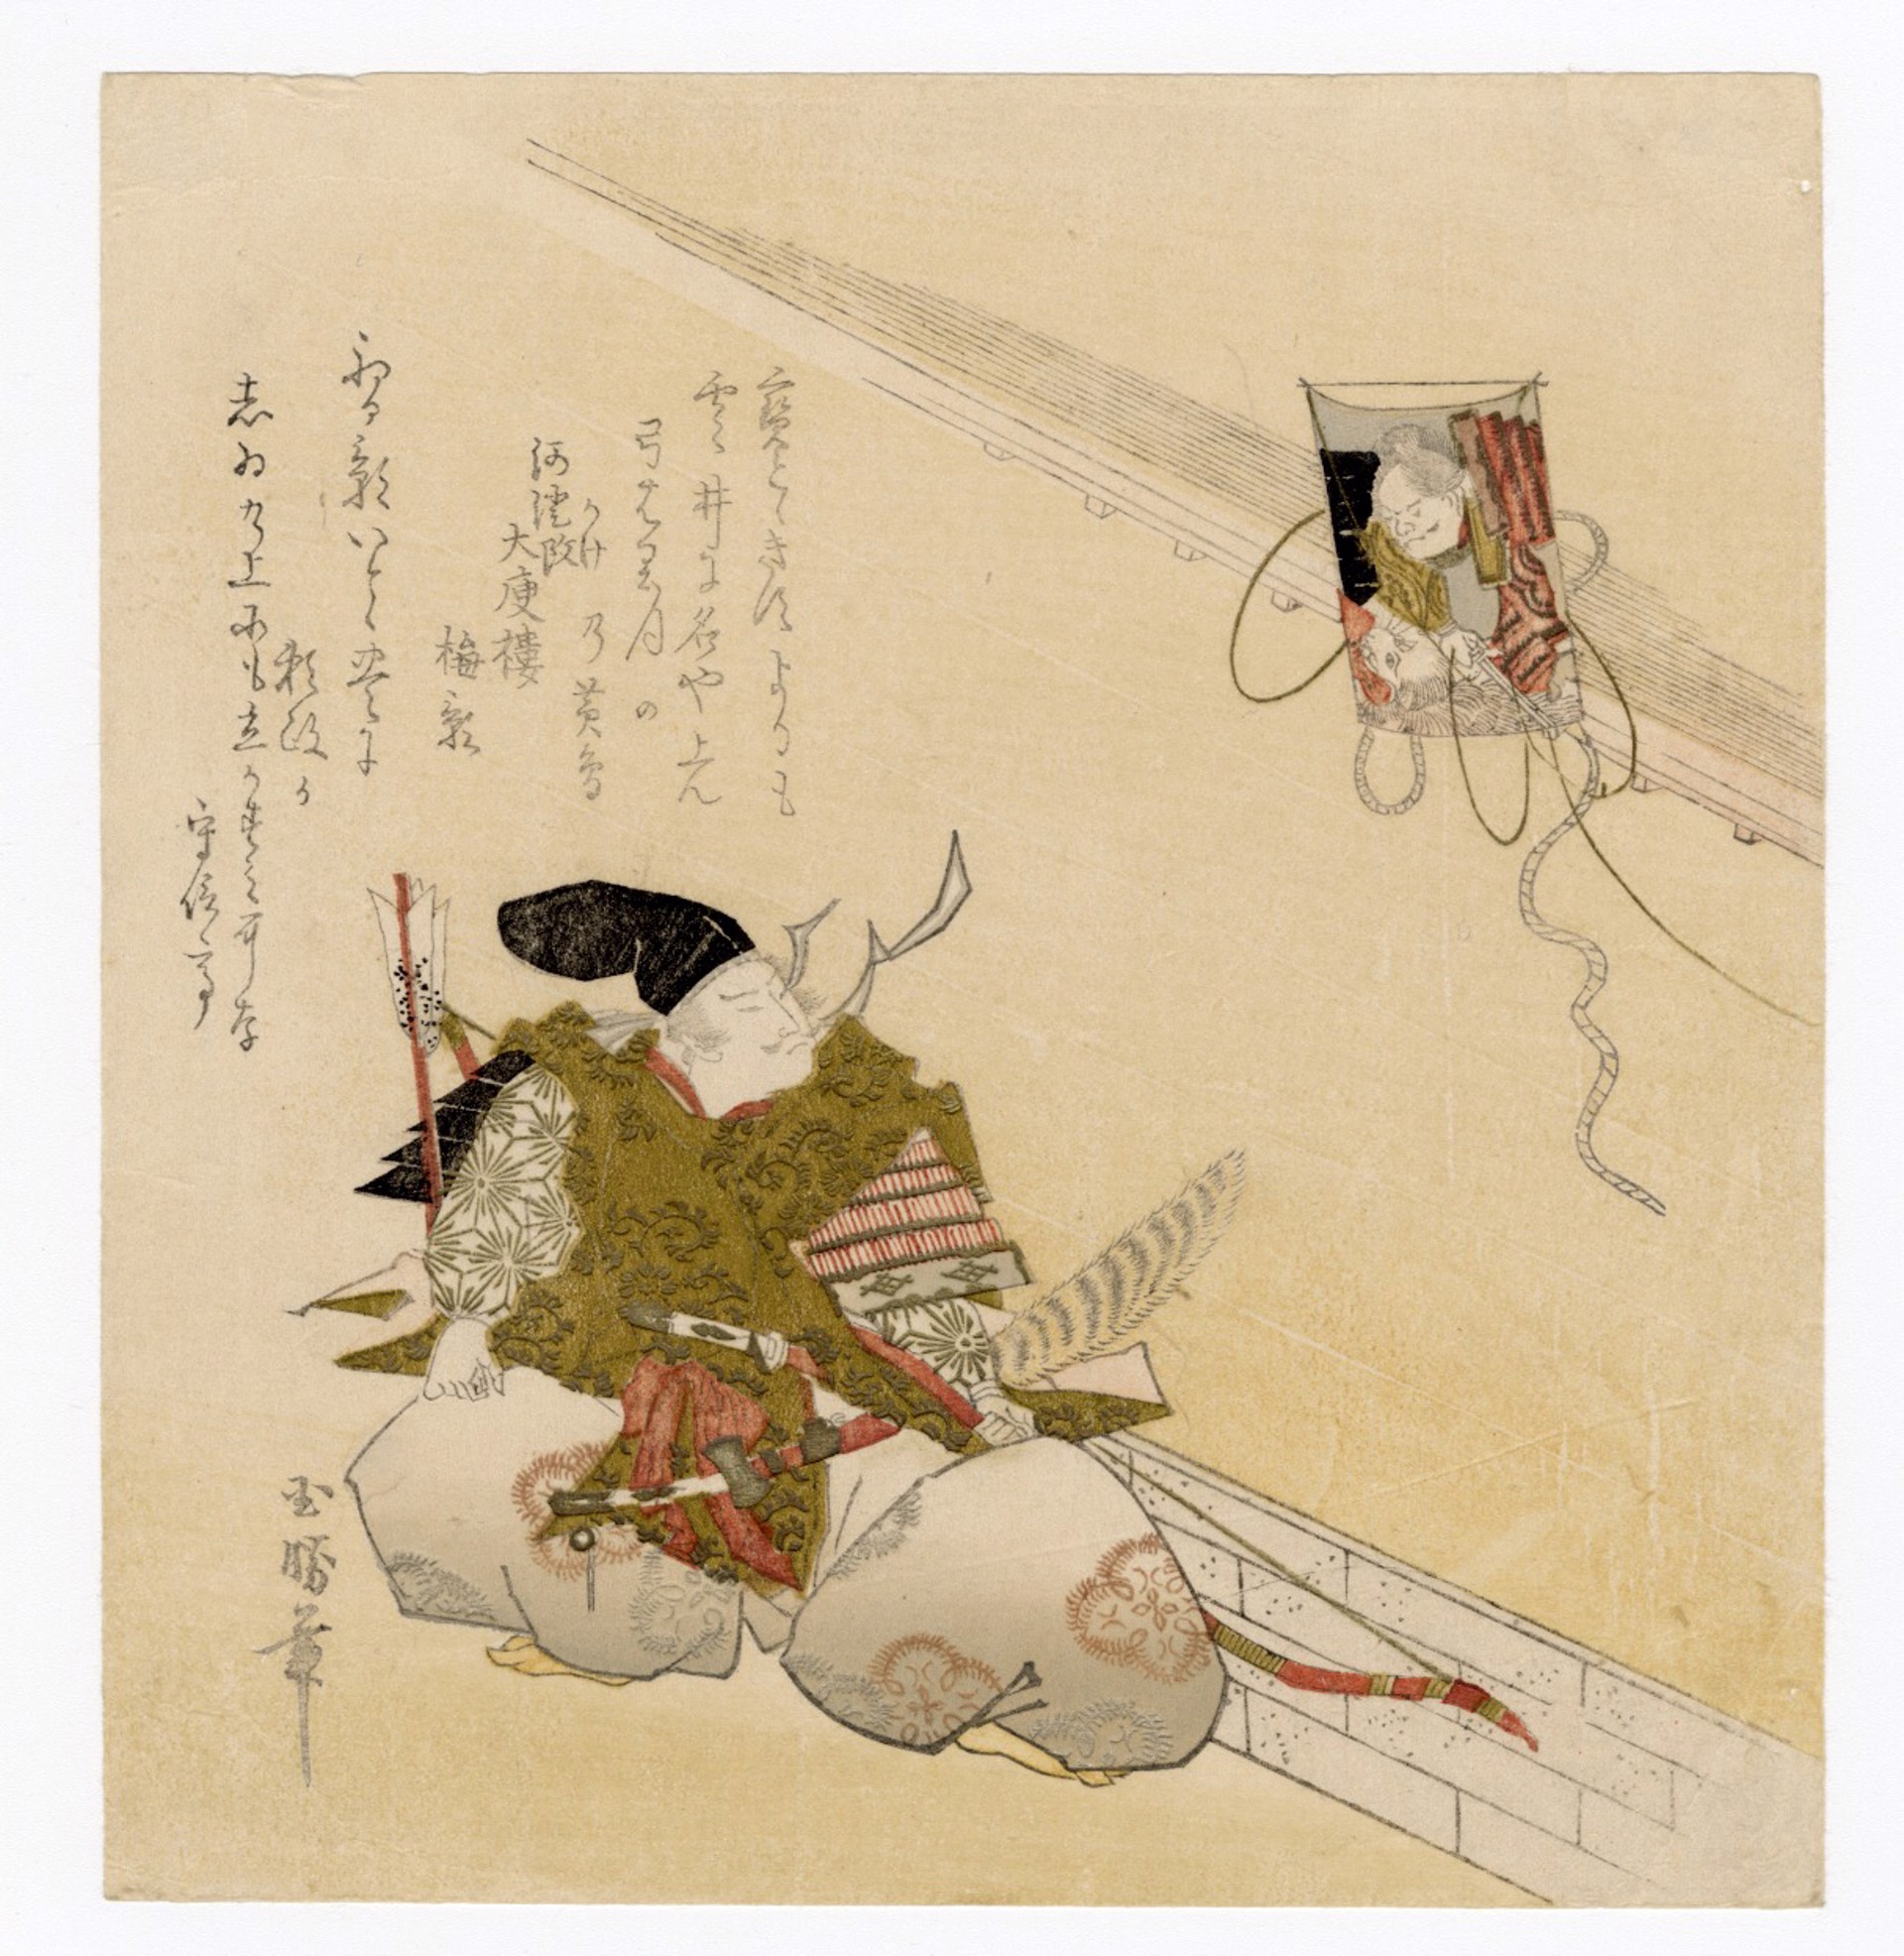 Minamoto no Yorimasa Shooting the Nue which is Pictured in a Kite by Utagawa Kunikatsu